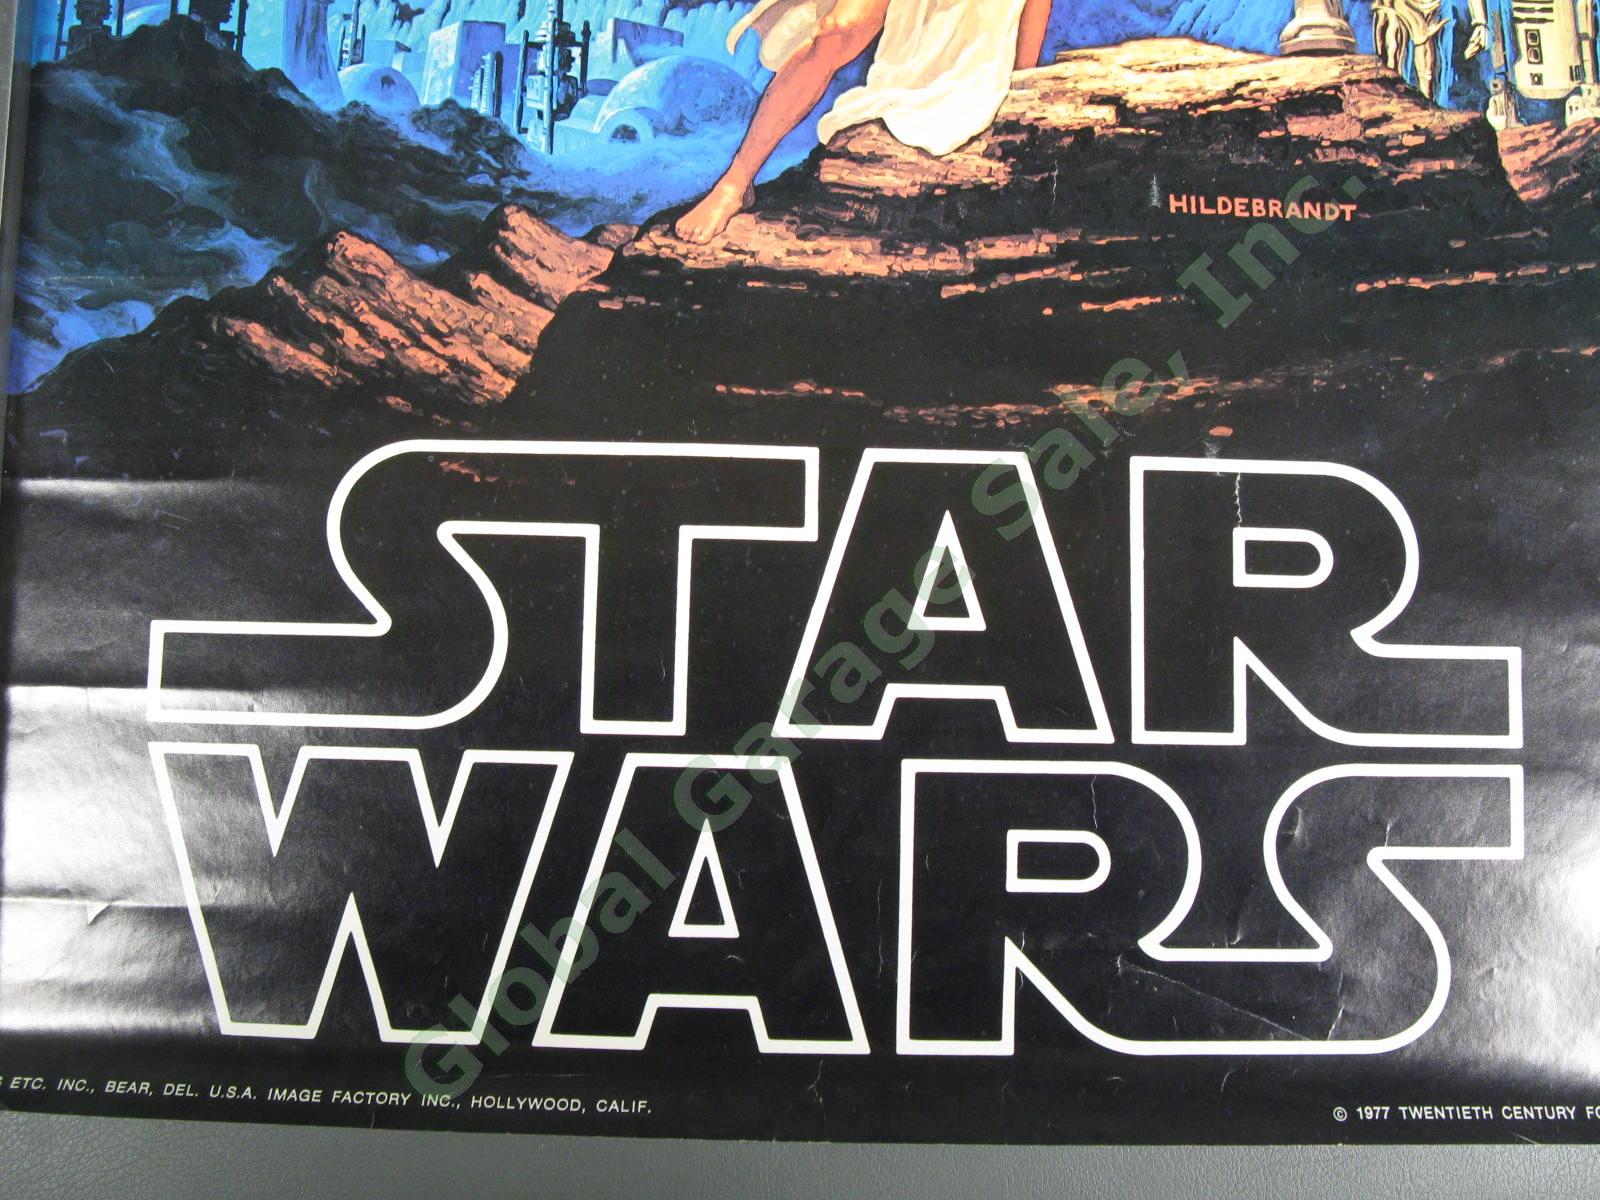 ORIGINAL 1977 Star Wars New Hope Hildebrandt 20th Century Fox Film Poster 28x20" 3